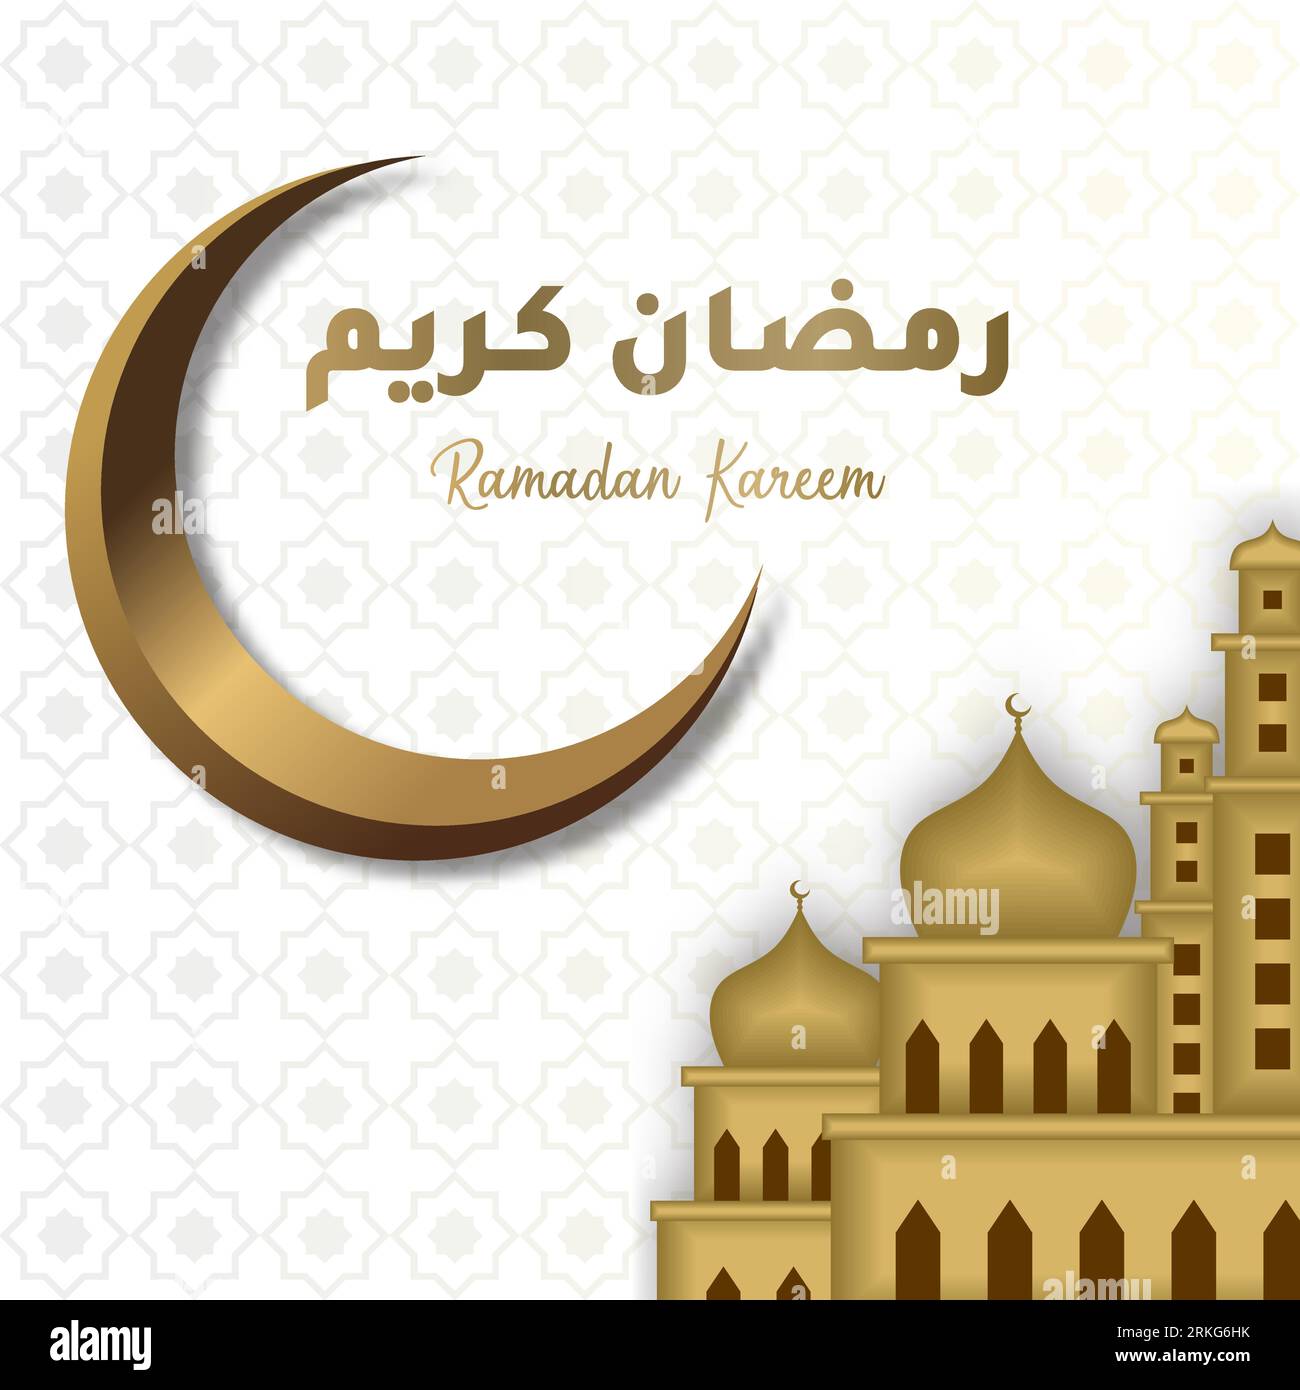 Il biglietto d'auguri del Ramadan Kareem con mezzaluna dorata, grande moschea dorata e calligrafia araba significa "Ramadan Holly". Disegno disegnato a mano elegante design Illustrazione Vettoriale